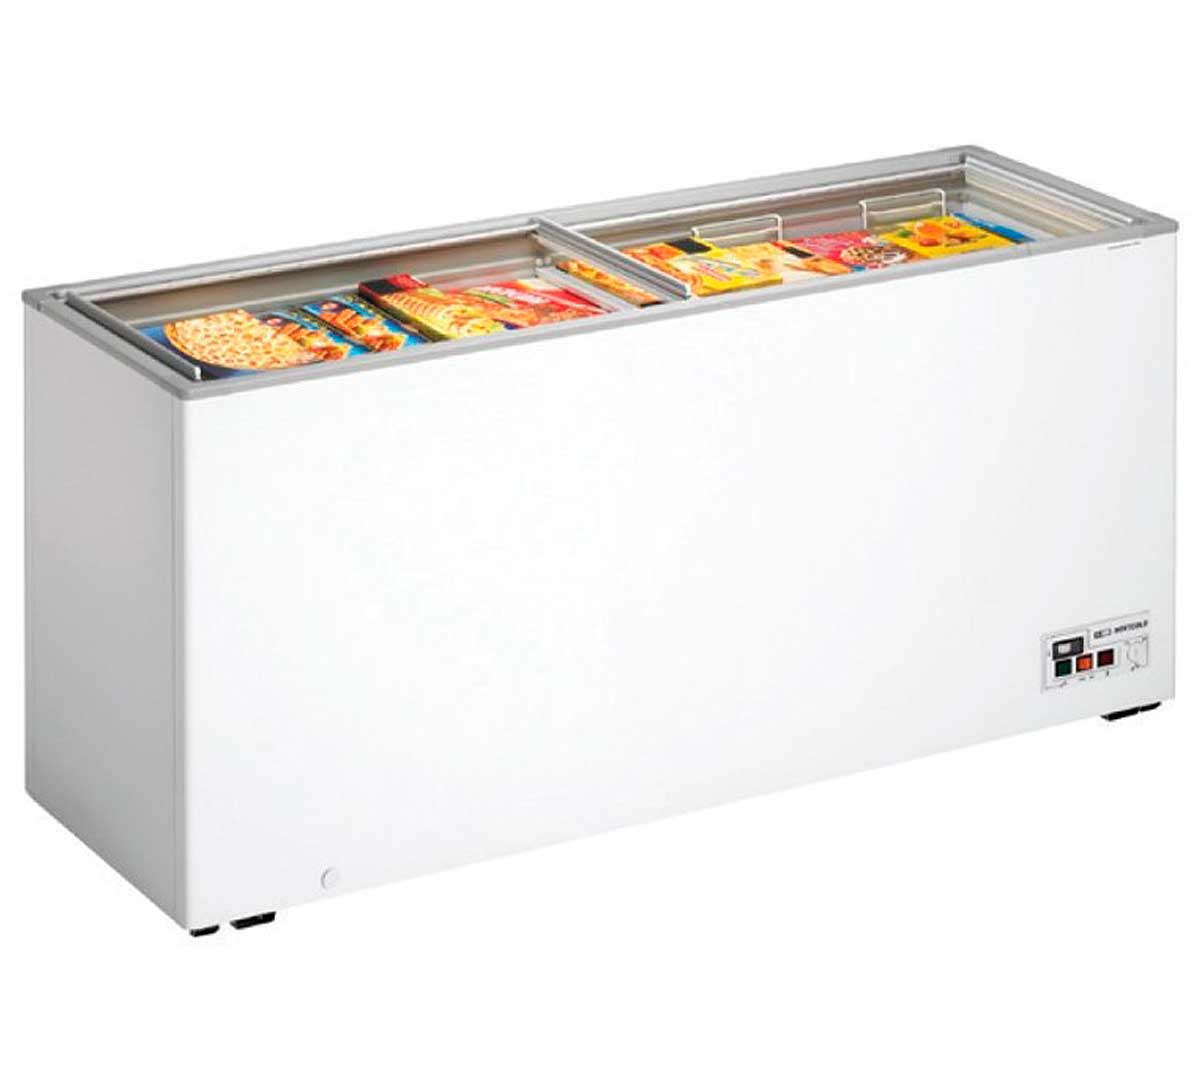 Изготовление морозильной камеры. Морозильный ларь scan SD 450. Ларь морозильный r290 230-250л. Морозильные лари на r290. Liebherr r290 морозильник ларь.